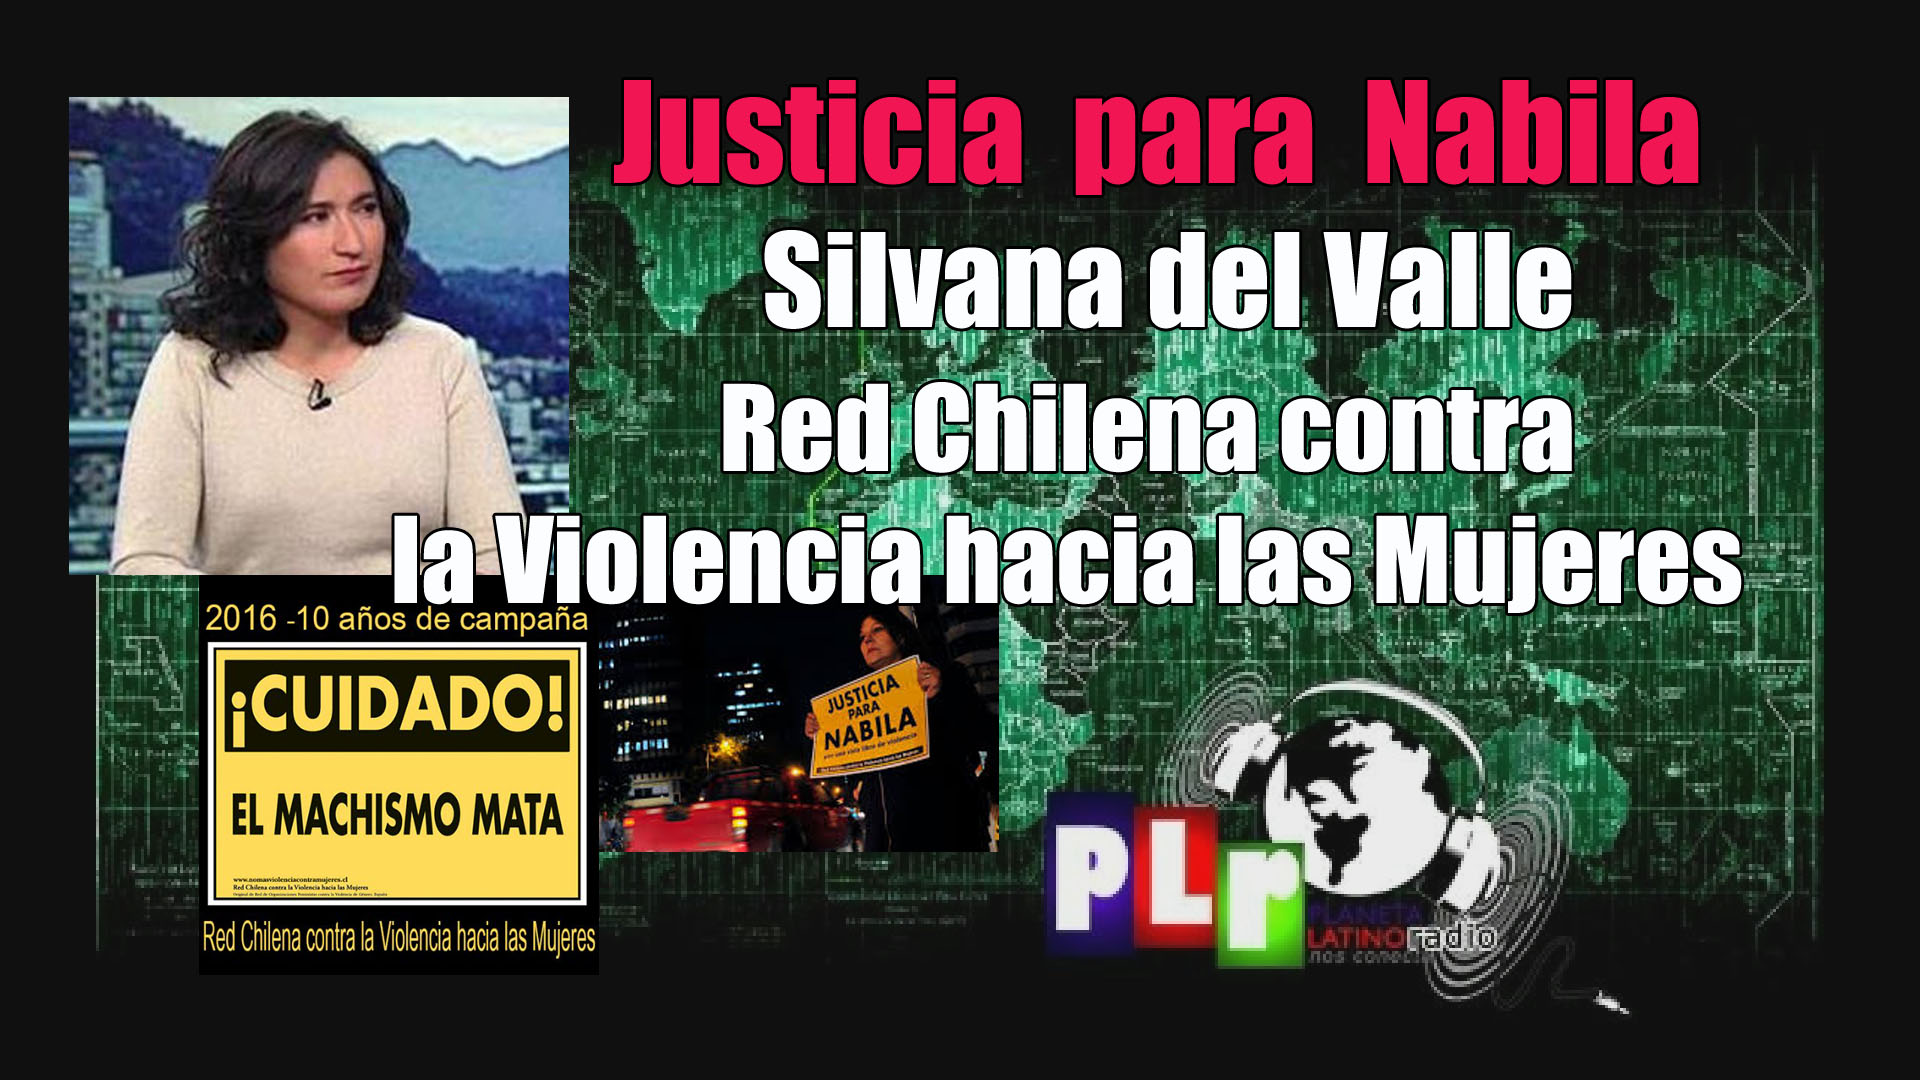 Nabila, el caso que conmociona Chile. El juicio en tribunales y en los medios de comunicación